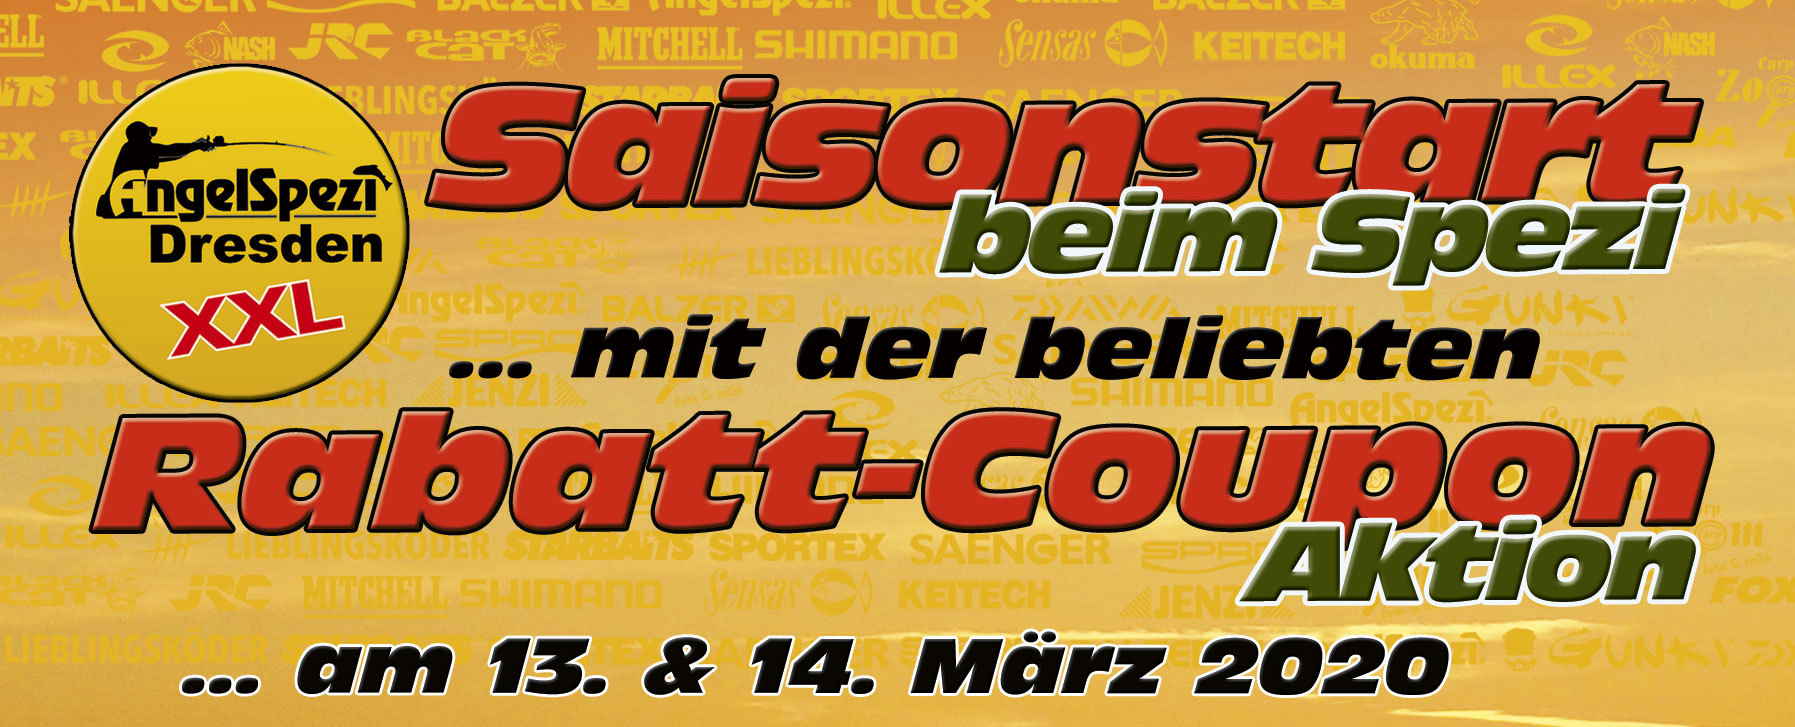 Coupon-Rabatt-Aktion im Angelspezi XXL Dresden 13. und 14. März 2020